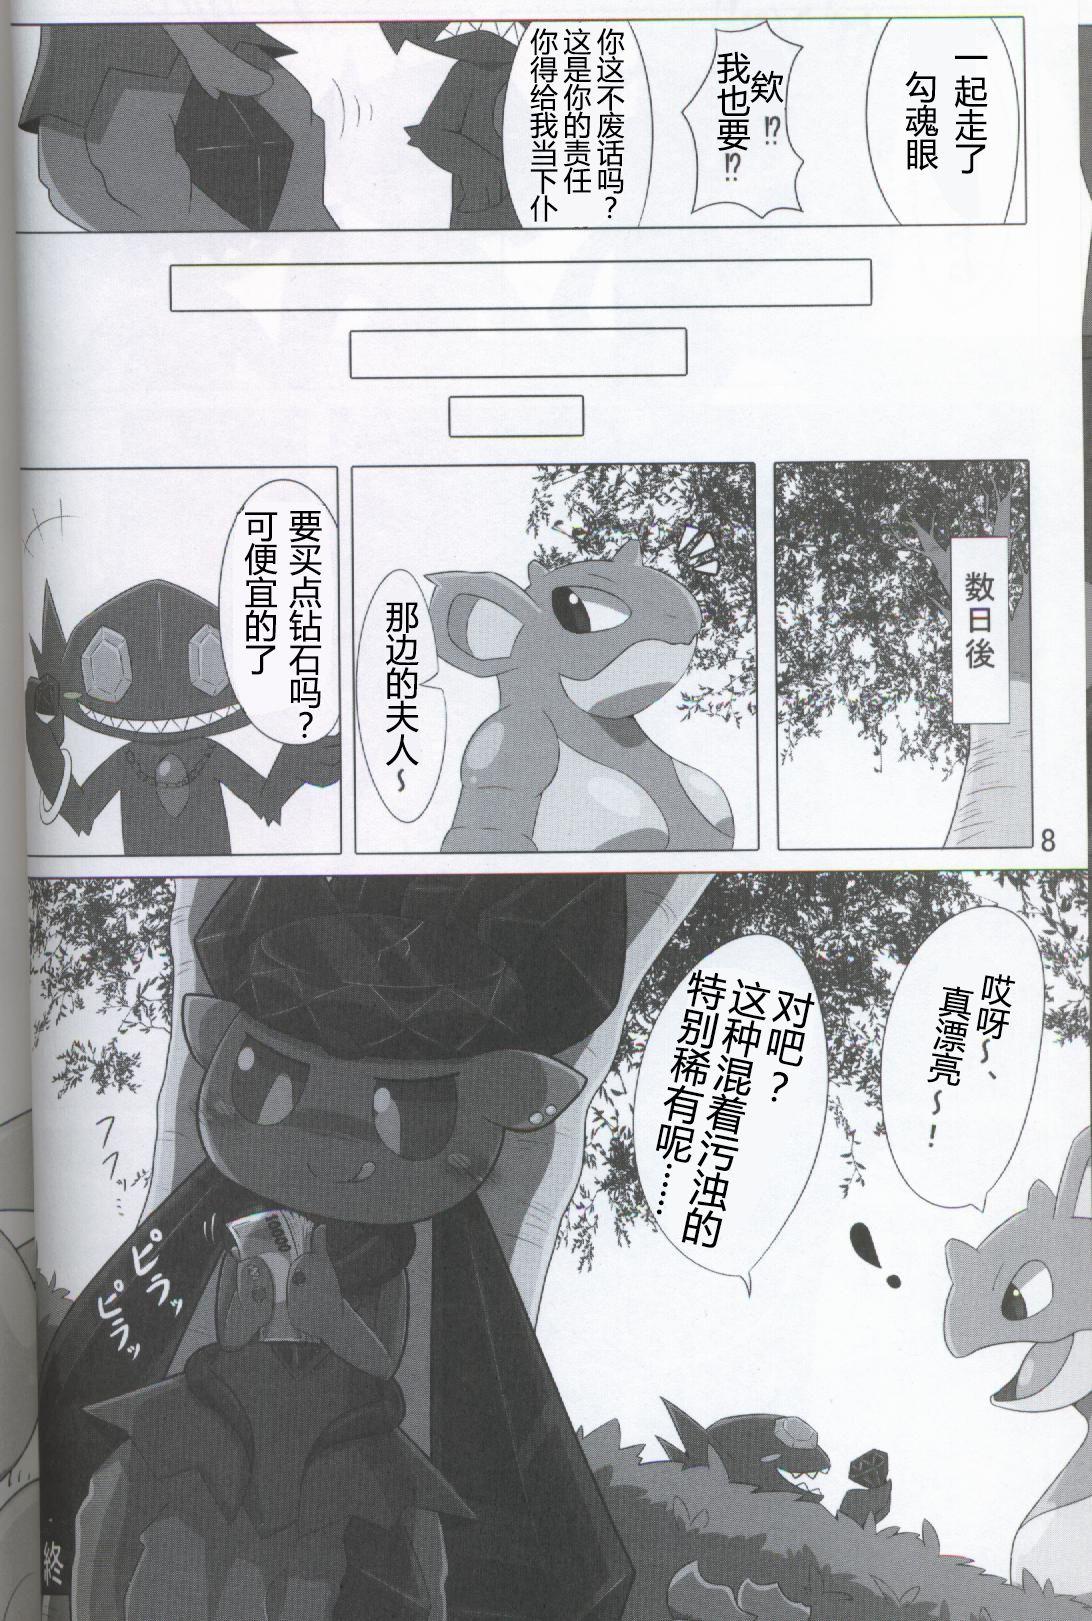 Exhib Pokéda | 宝可堕 - Pokemon France - Page 9